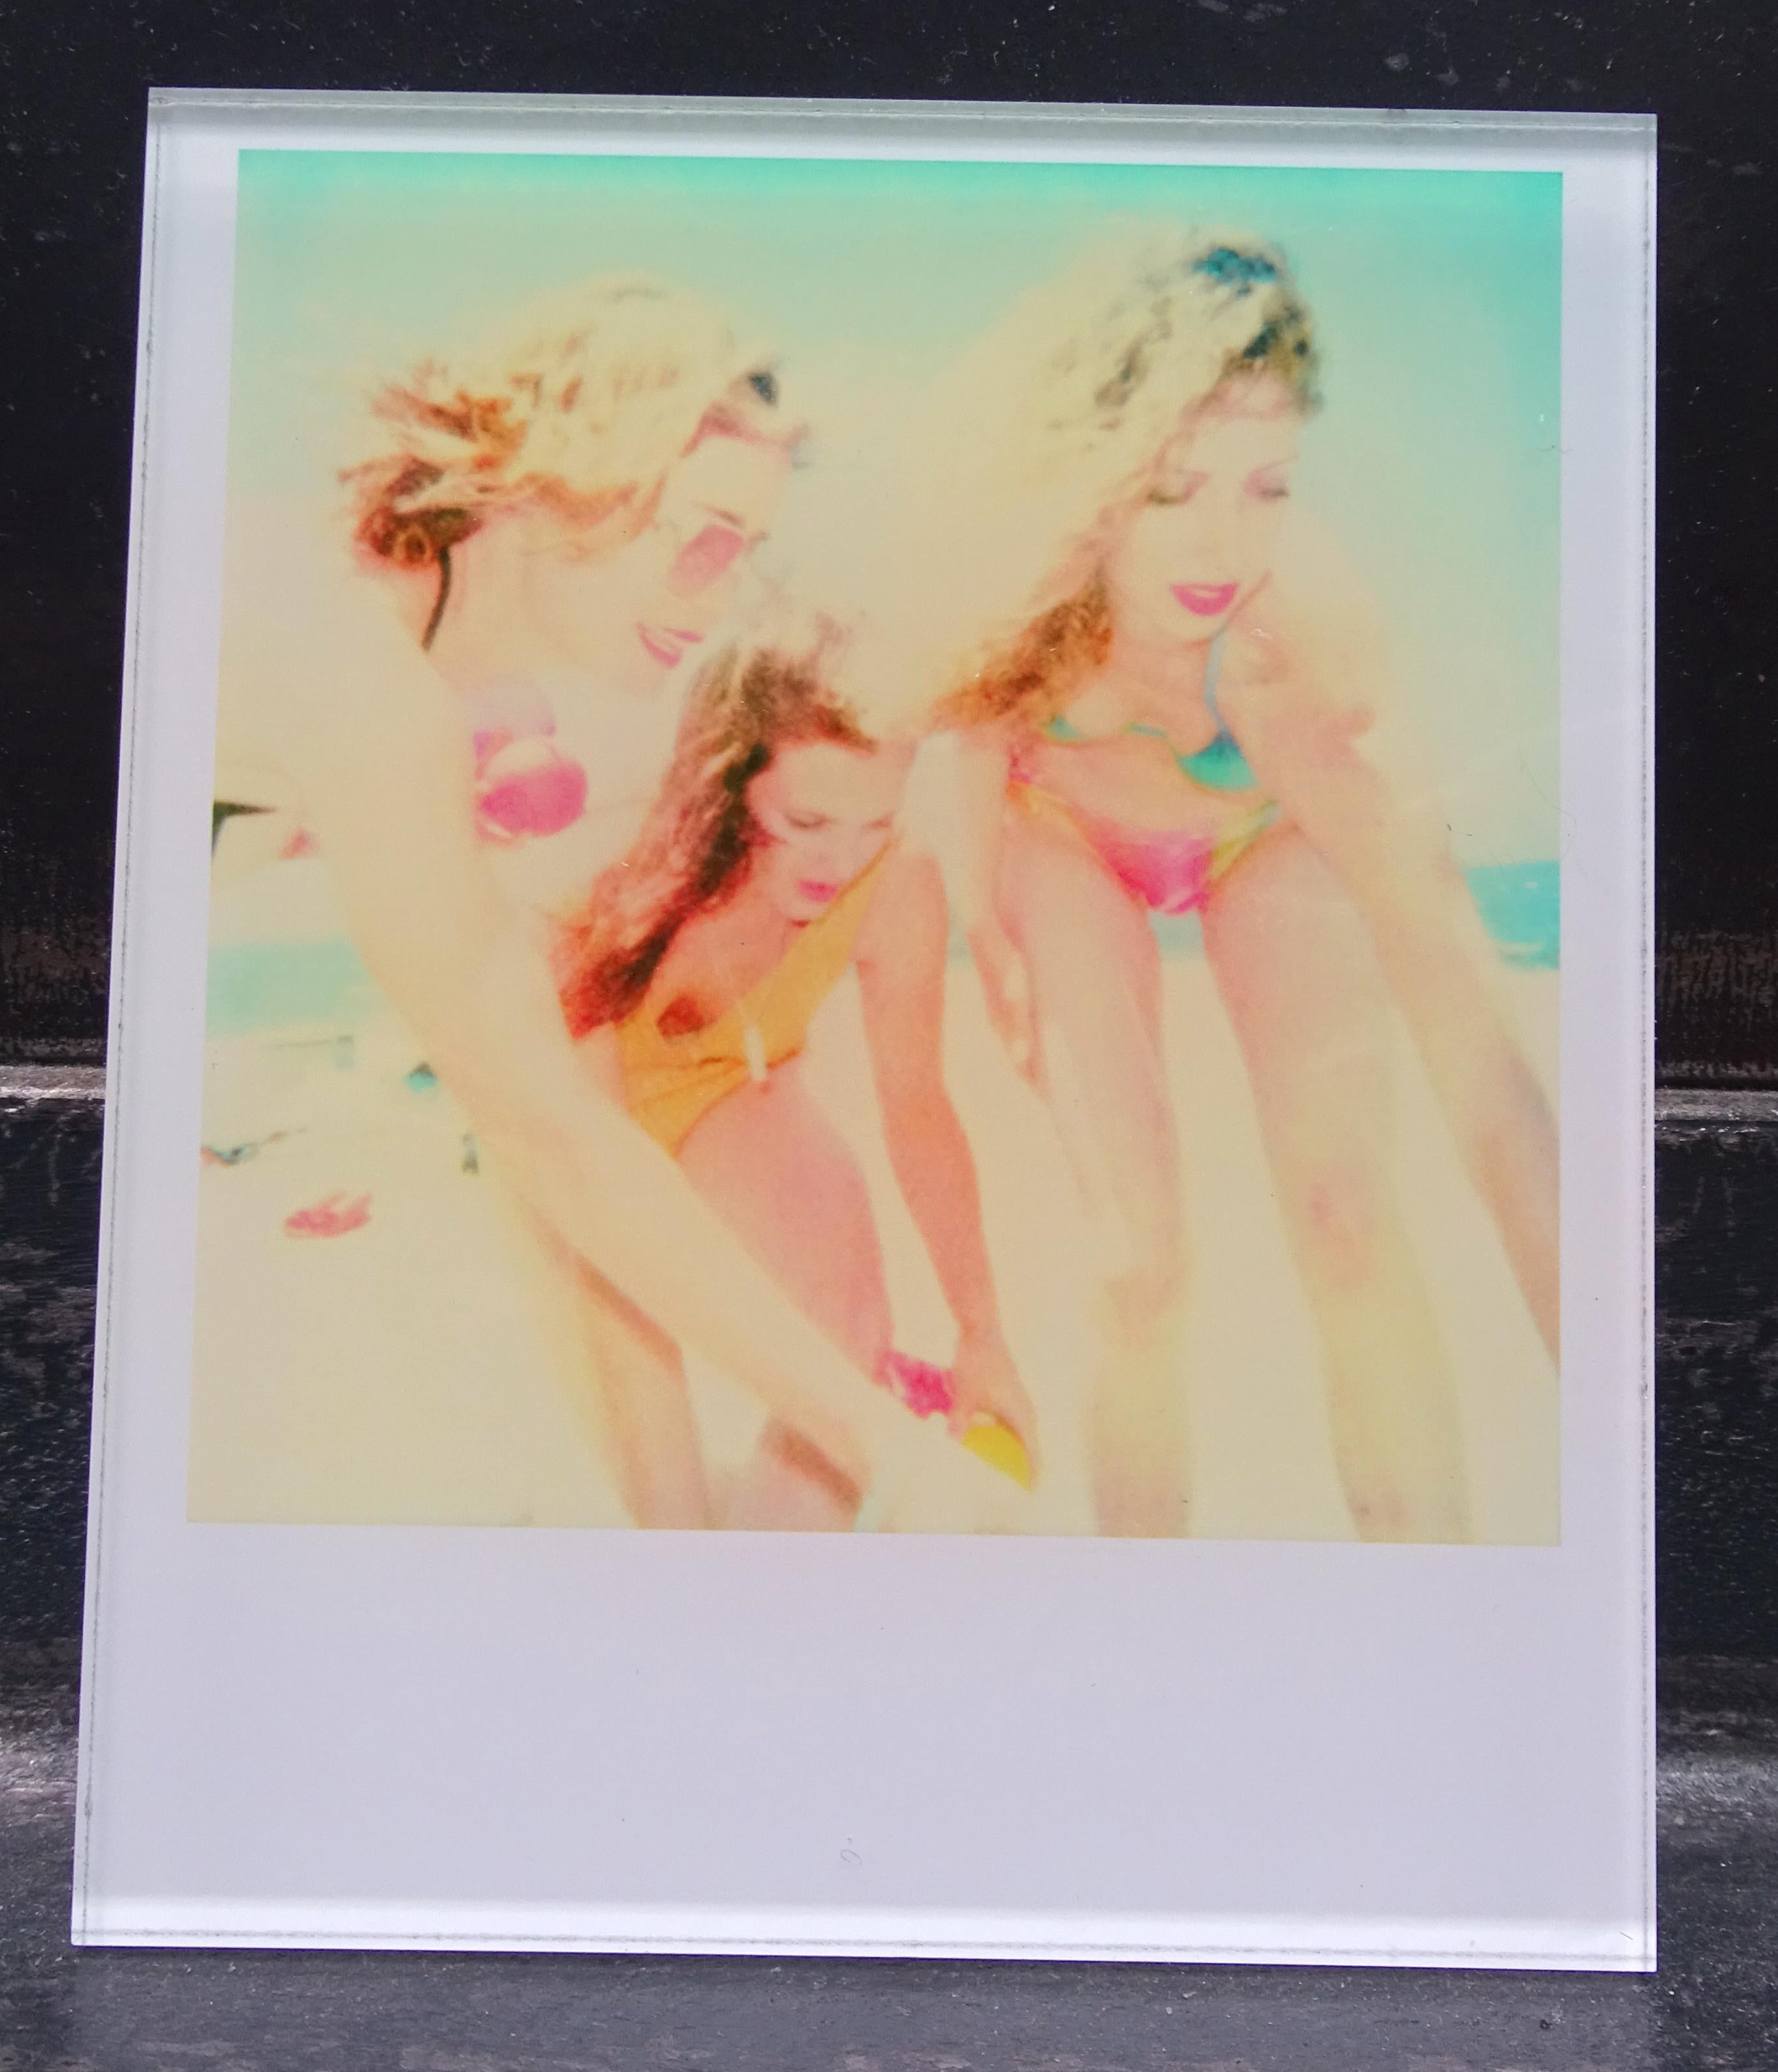 Beachshoot Mini #06 - mounted - featuring Rdaha Mitchell, based on a Polaroid